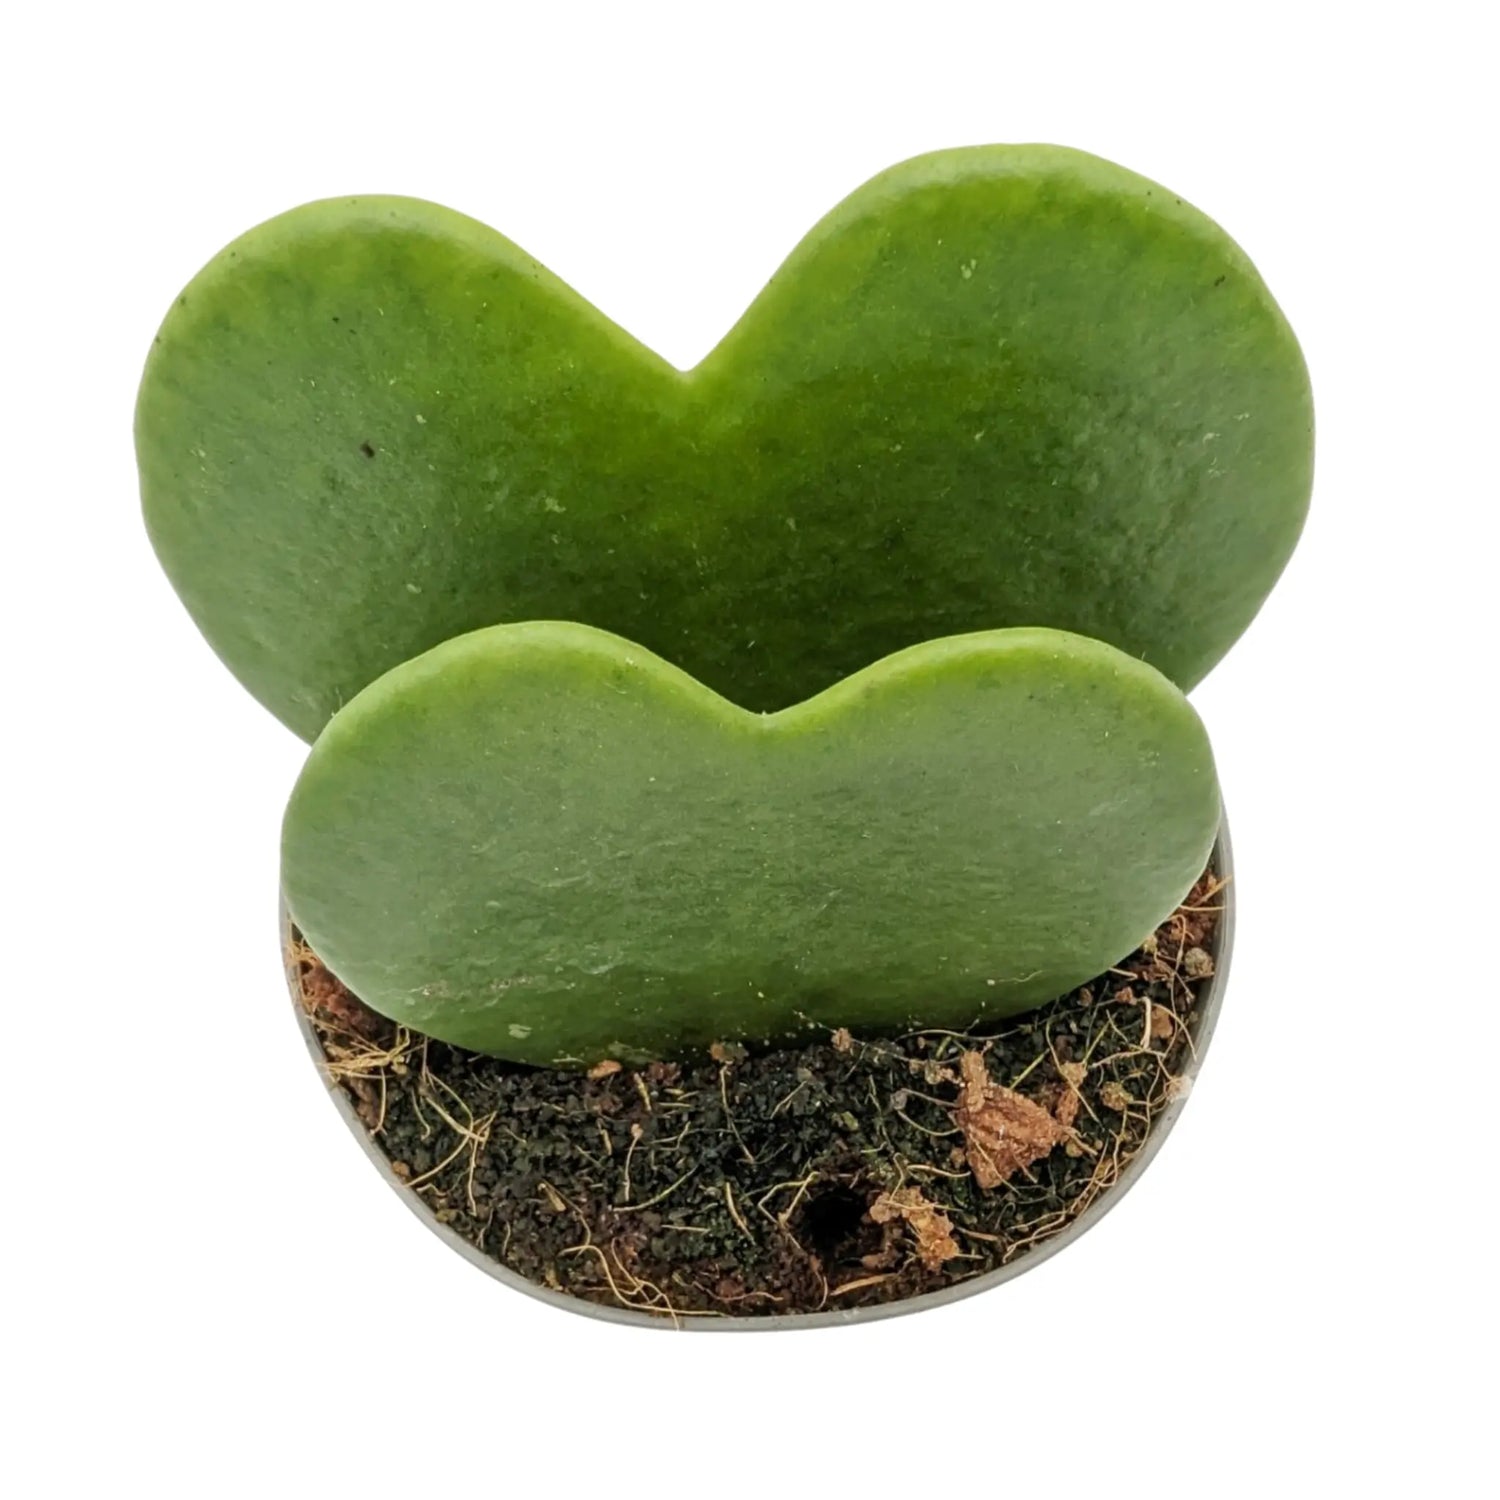 Hoya kerri Double Leaf - Valentine Hoya Leaf Culture